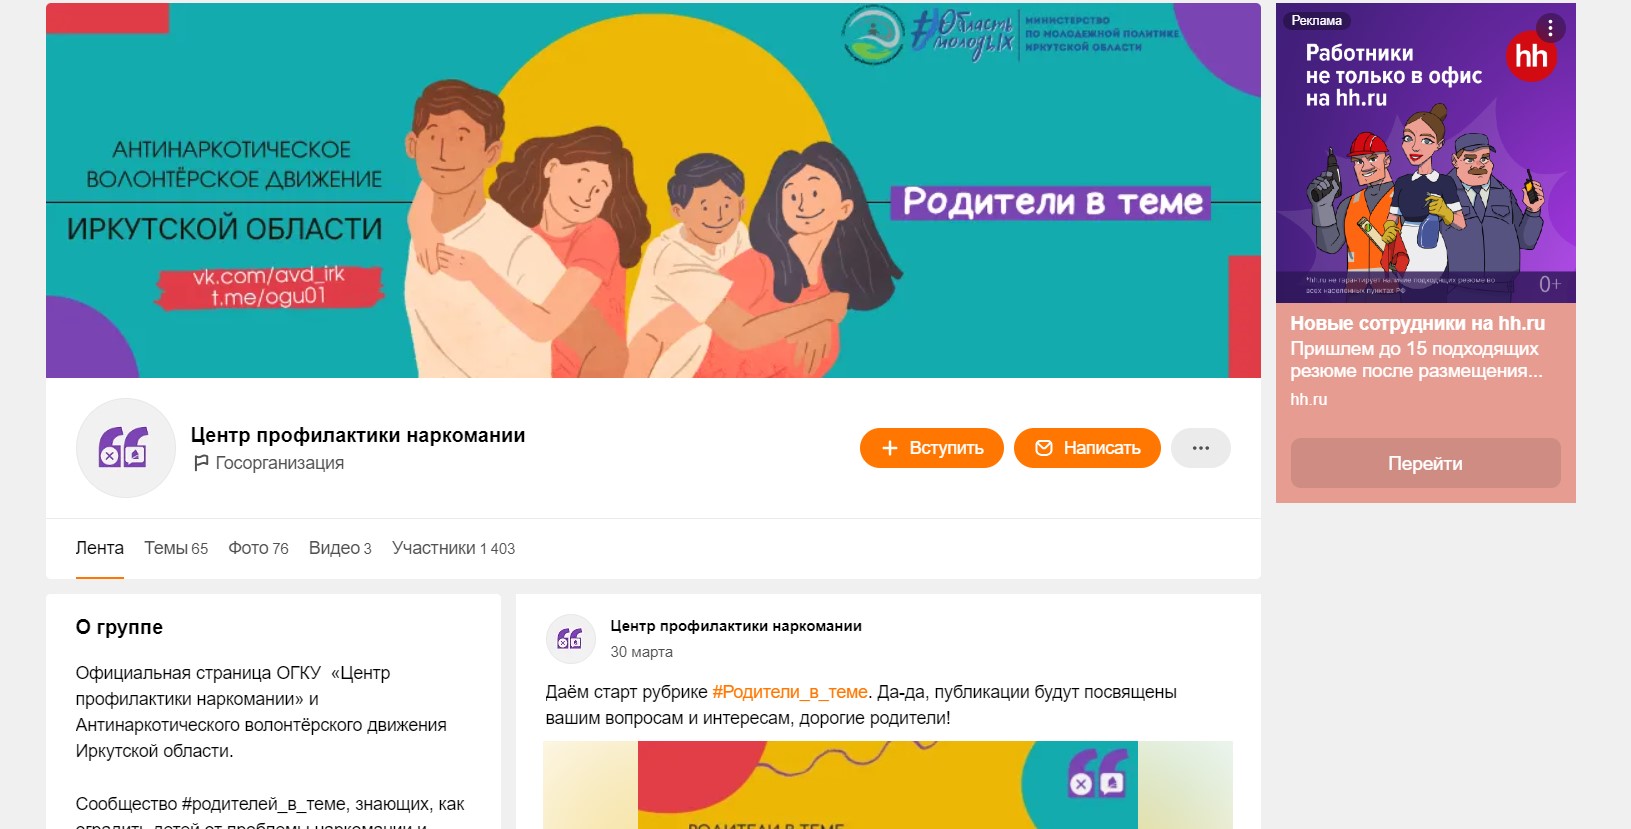 Антинаркотический областной аккаунт «родители в теме».